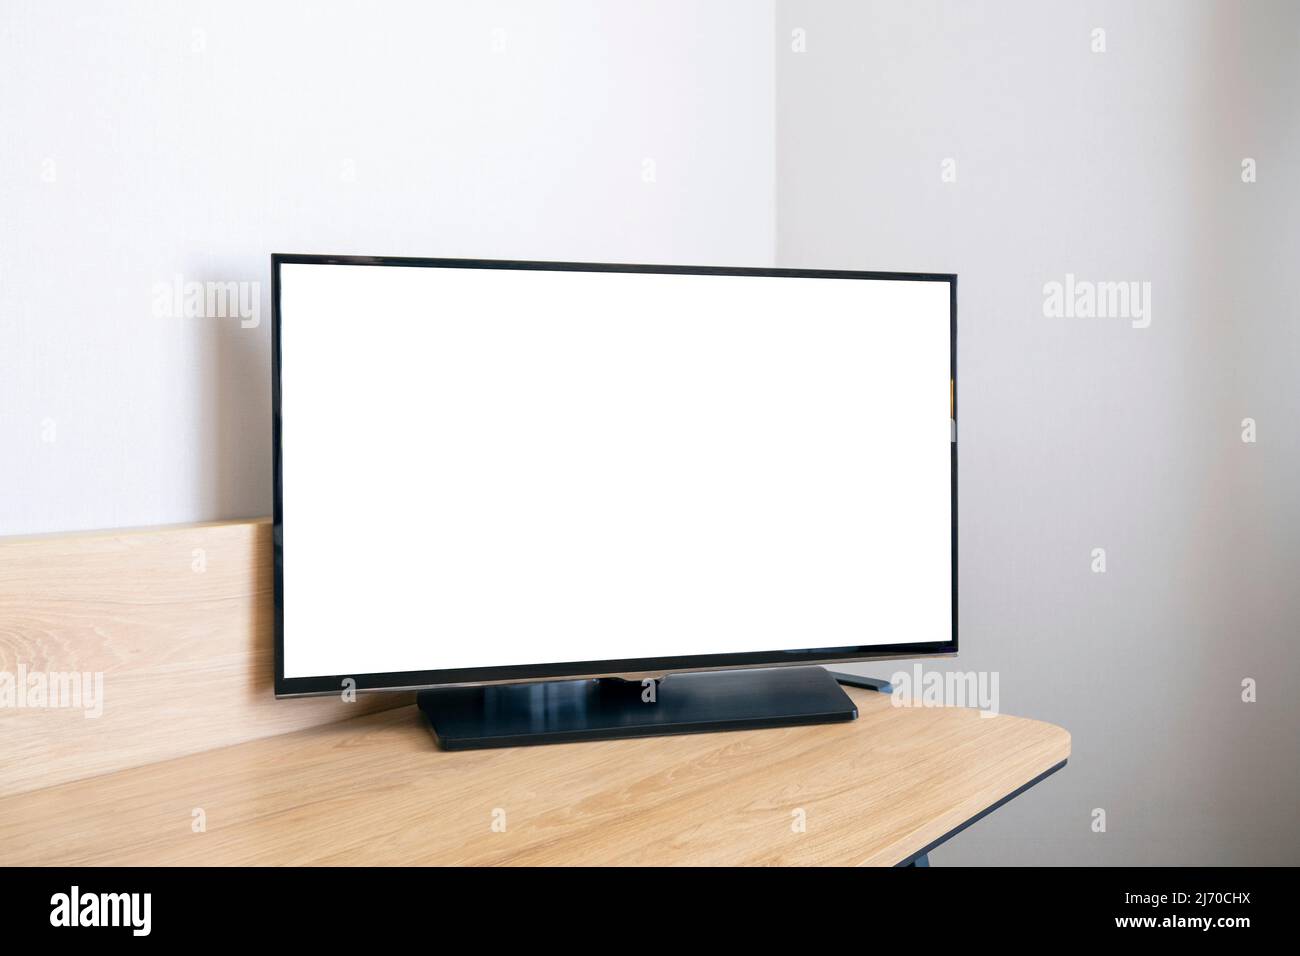 Computer führte Monitor auf einem Schreibtisch mit einem großen Riss Und  bunte Linien, die über den Bildschirm laufen Stockfotografie - Alamy